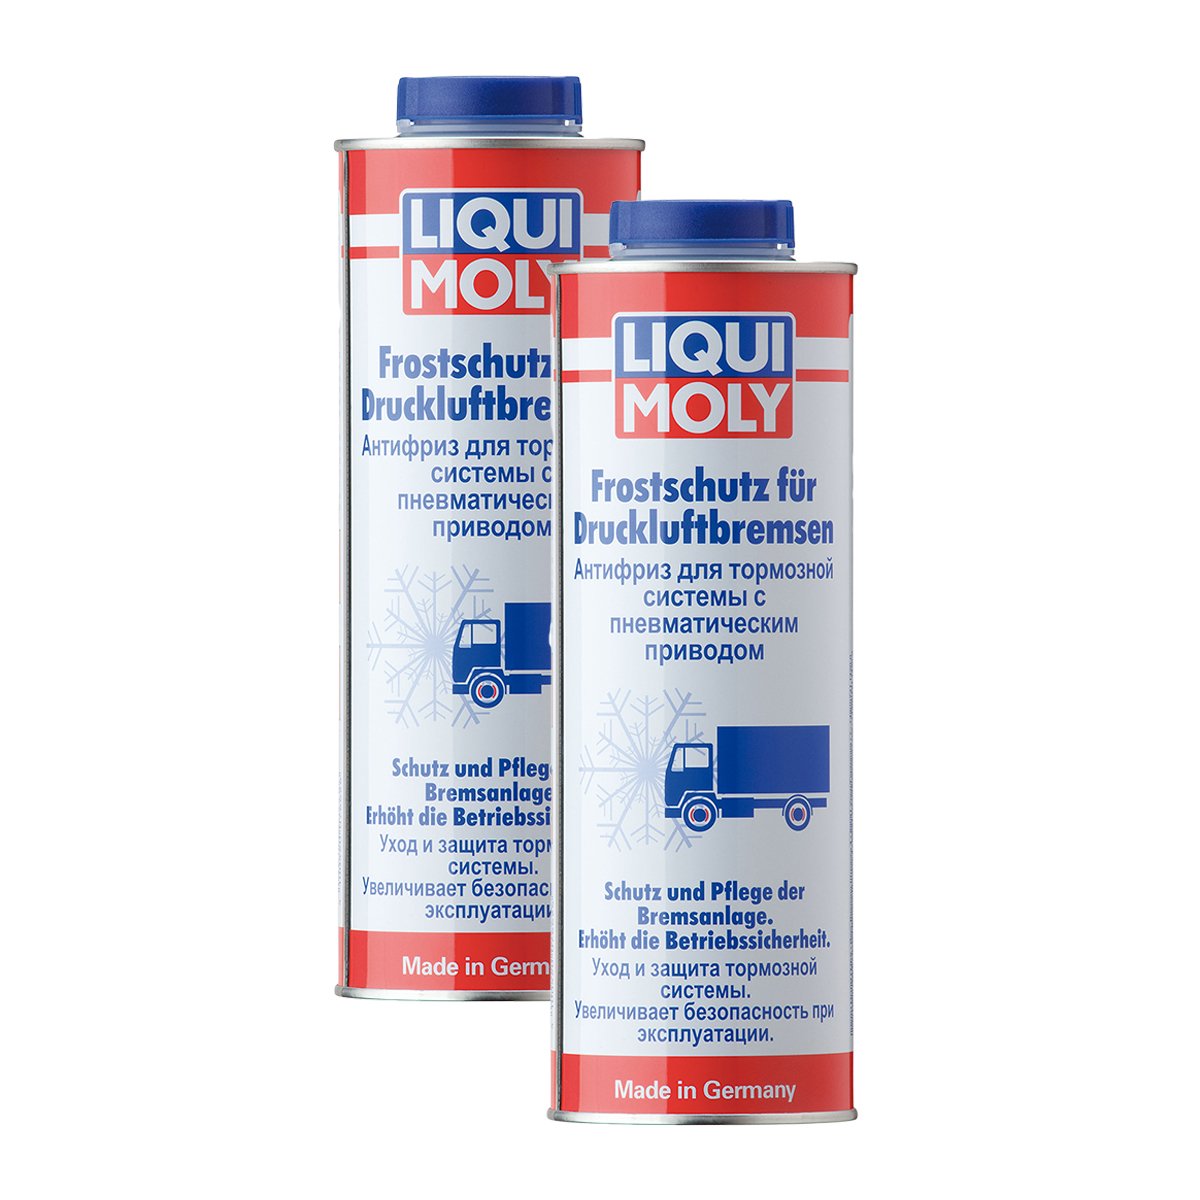 2X LIQUI Moly 1828 Frostschutz für Druckluftbremsen 1L von LIQUI-MOLY_bundle